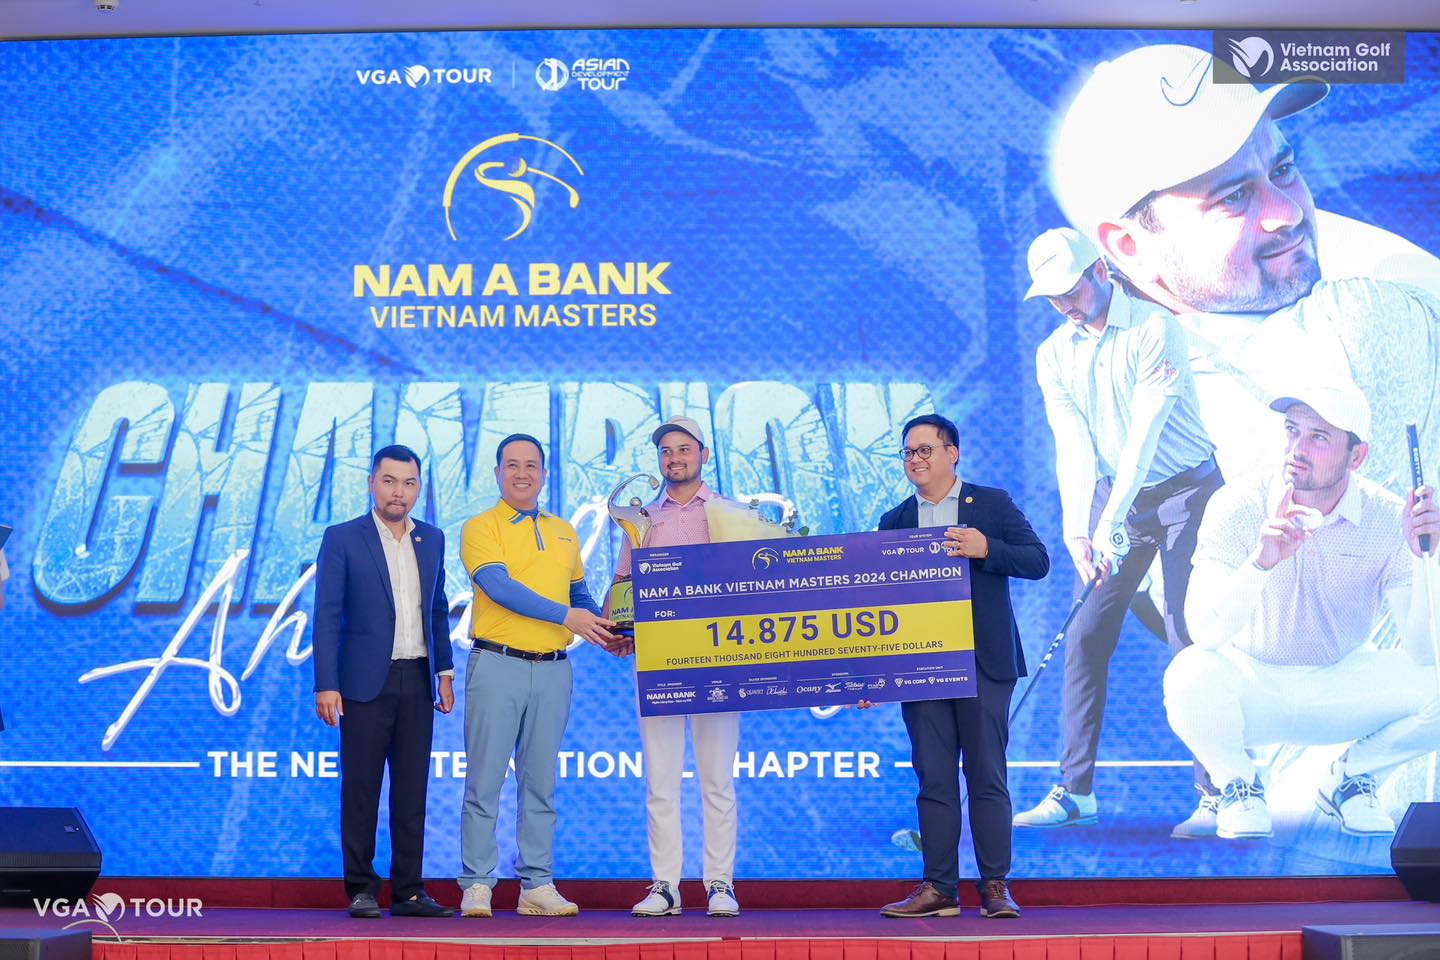 Ahmad Baig người Pakistan vô địch giải Vietnam Masters 2024 với thành tích kỷ lục